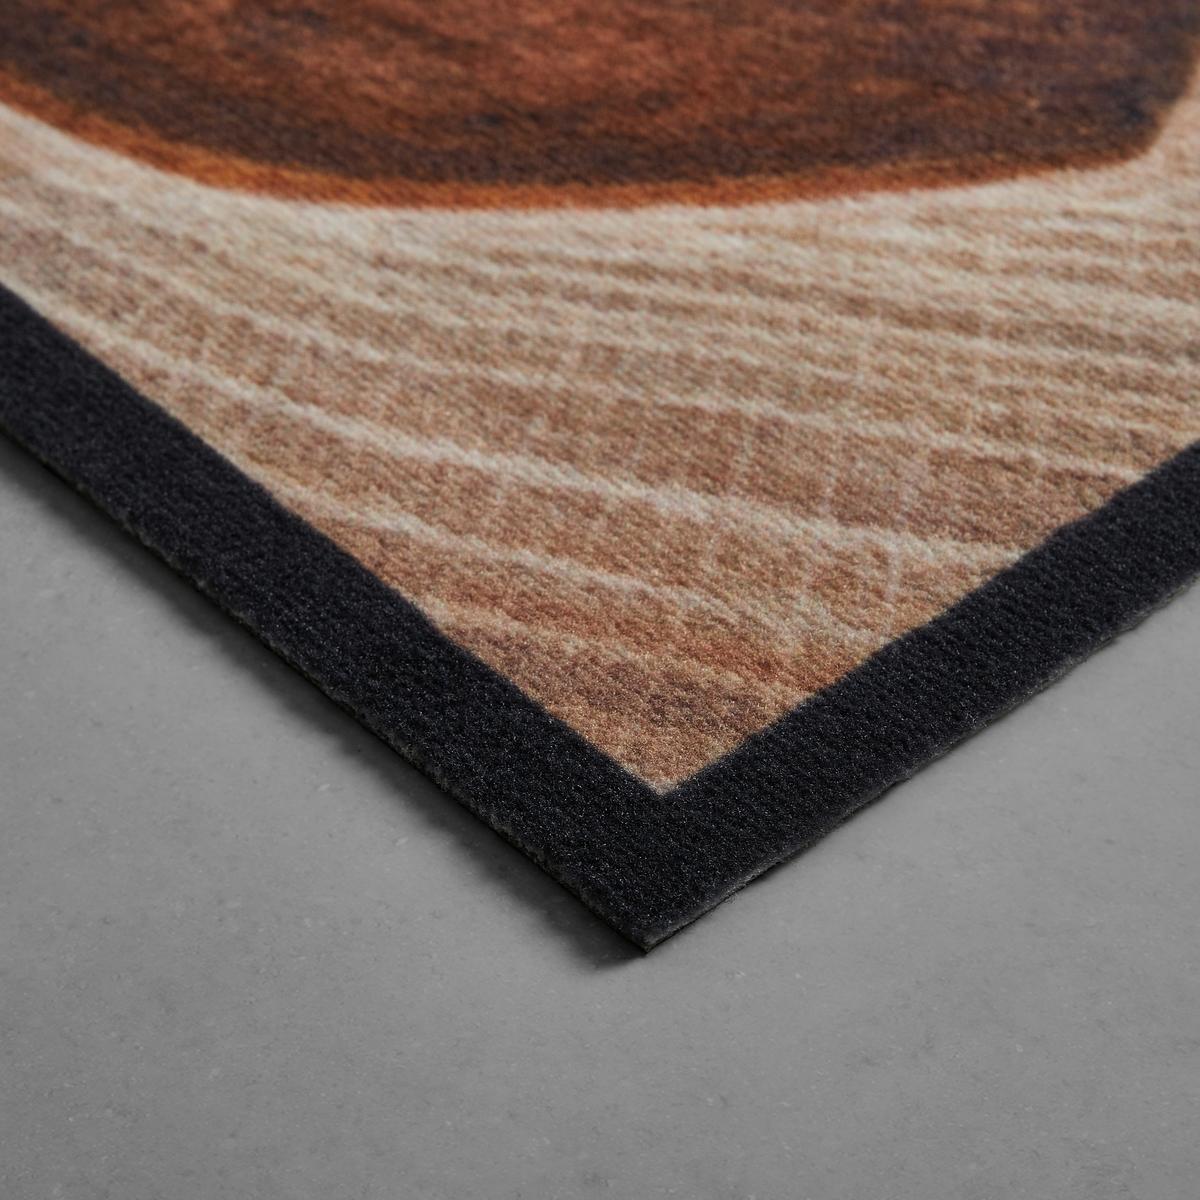 Fußmatte Love Home Wood in Braun ca. 50x70cm online kaufen ➤ mömax